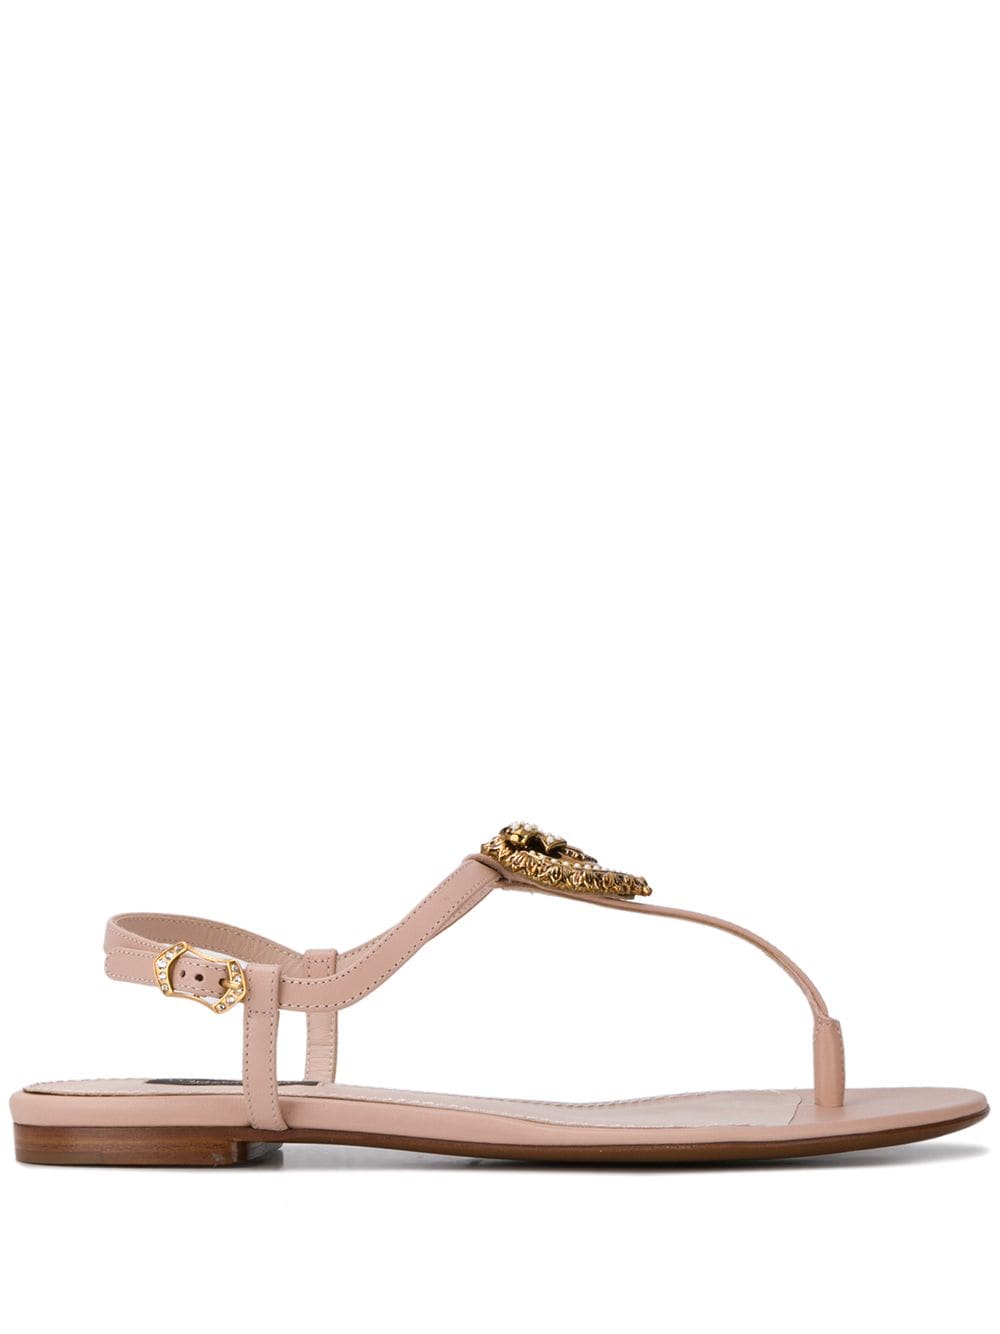 Dolce & Gabbana Devotion leather thong sandals - Pink von Dolce & Gabbana